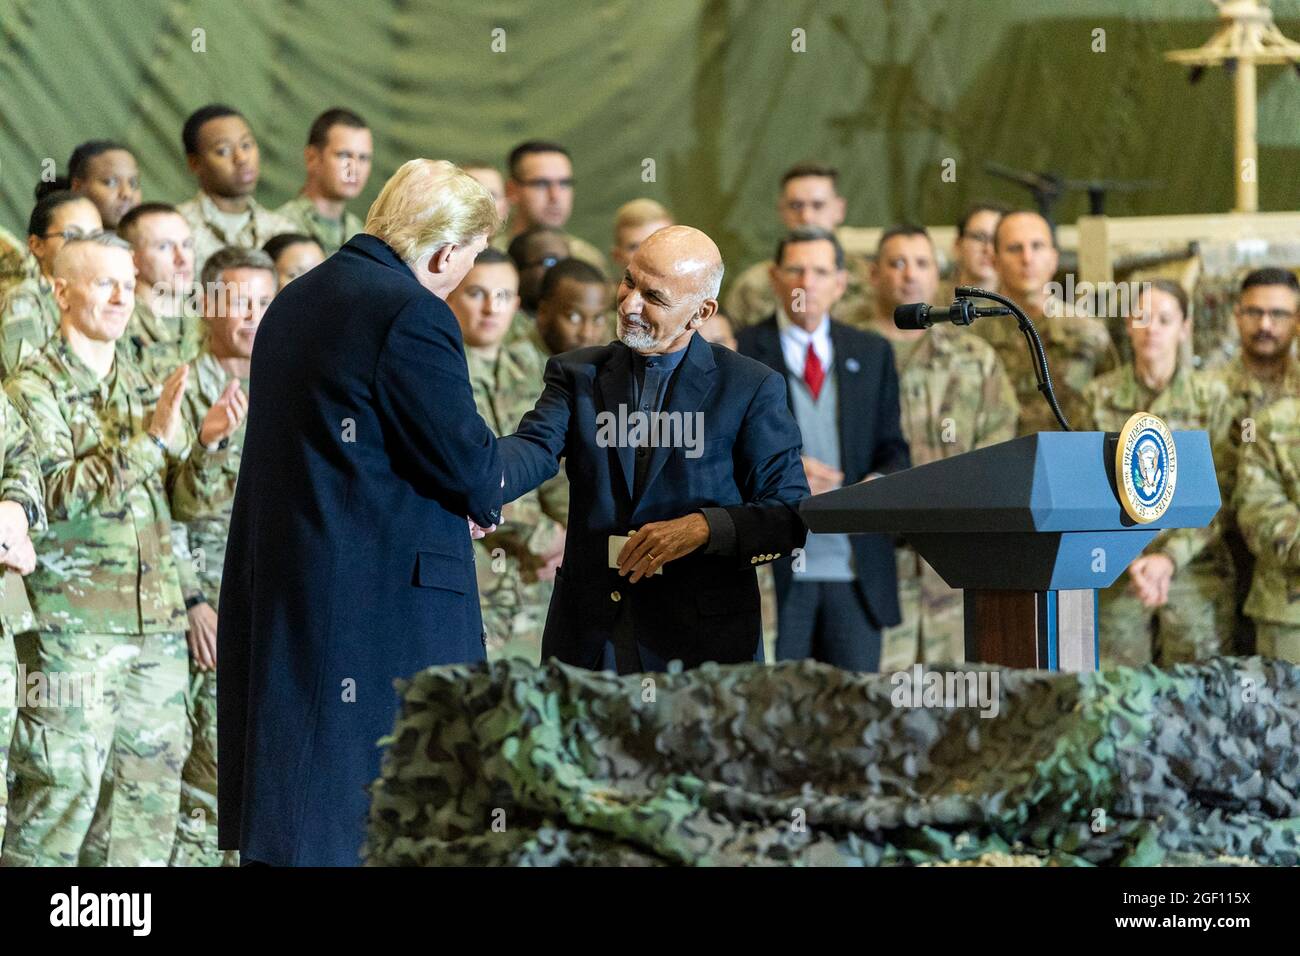 Präsident Donald J. Trump besucht am Donnerstag, dem 28. November 2019, Truppen im Bagram Airfield in Afghanistan, während eines überraschenden Besuchs, um Thanksgiving mit Truppen zu verbringen. (Offizielles Foto des Weißen Hauses von Shealah Craighead) Stockfoto